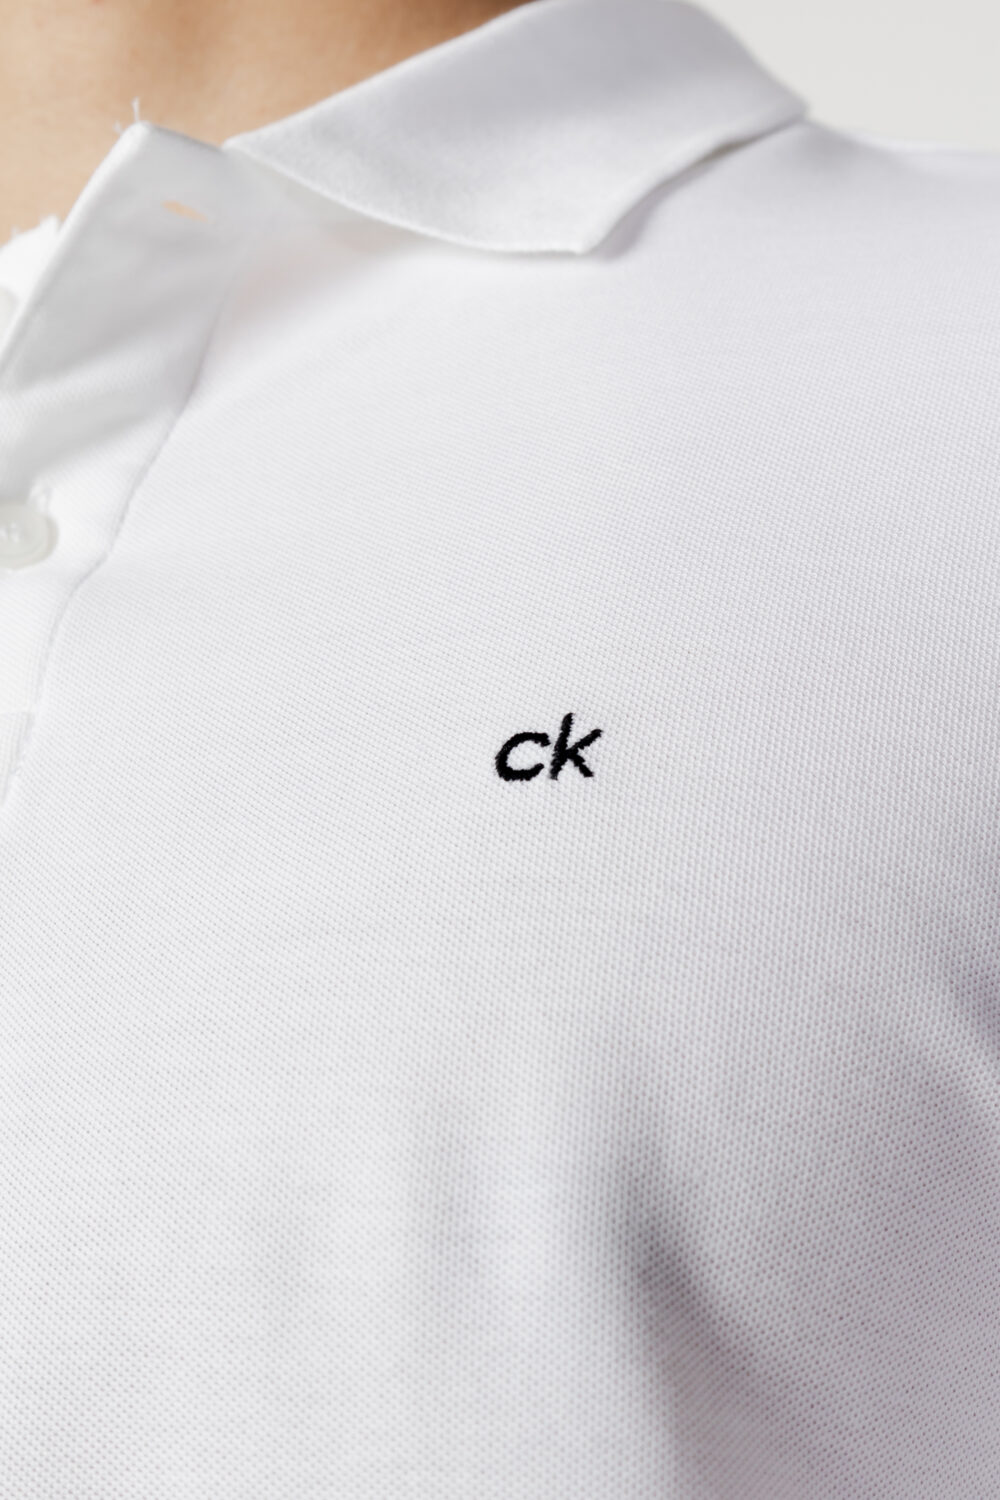 Polo manica corta Calvin Klein LOGO REFINED PIQUE SLIM Bianco - Foto 2